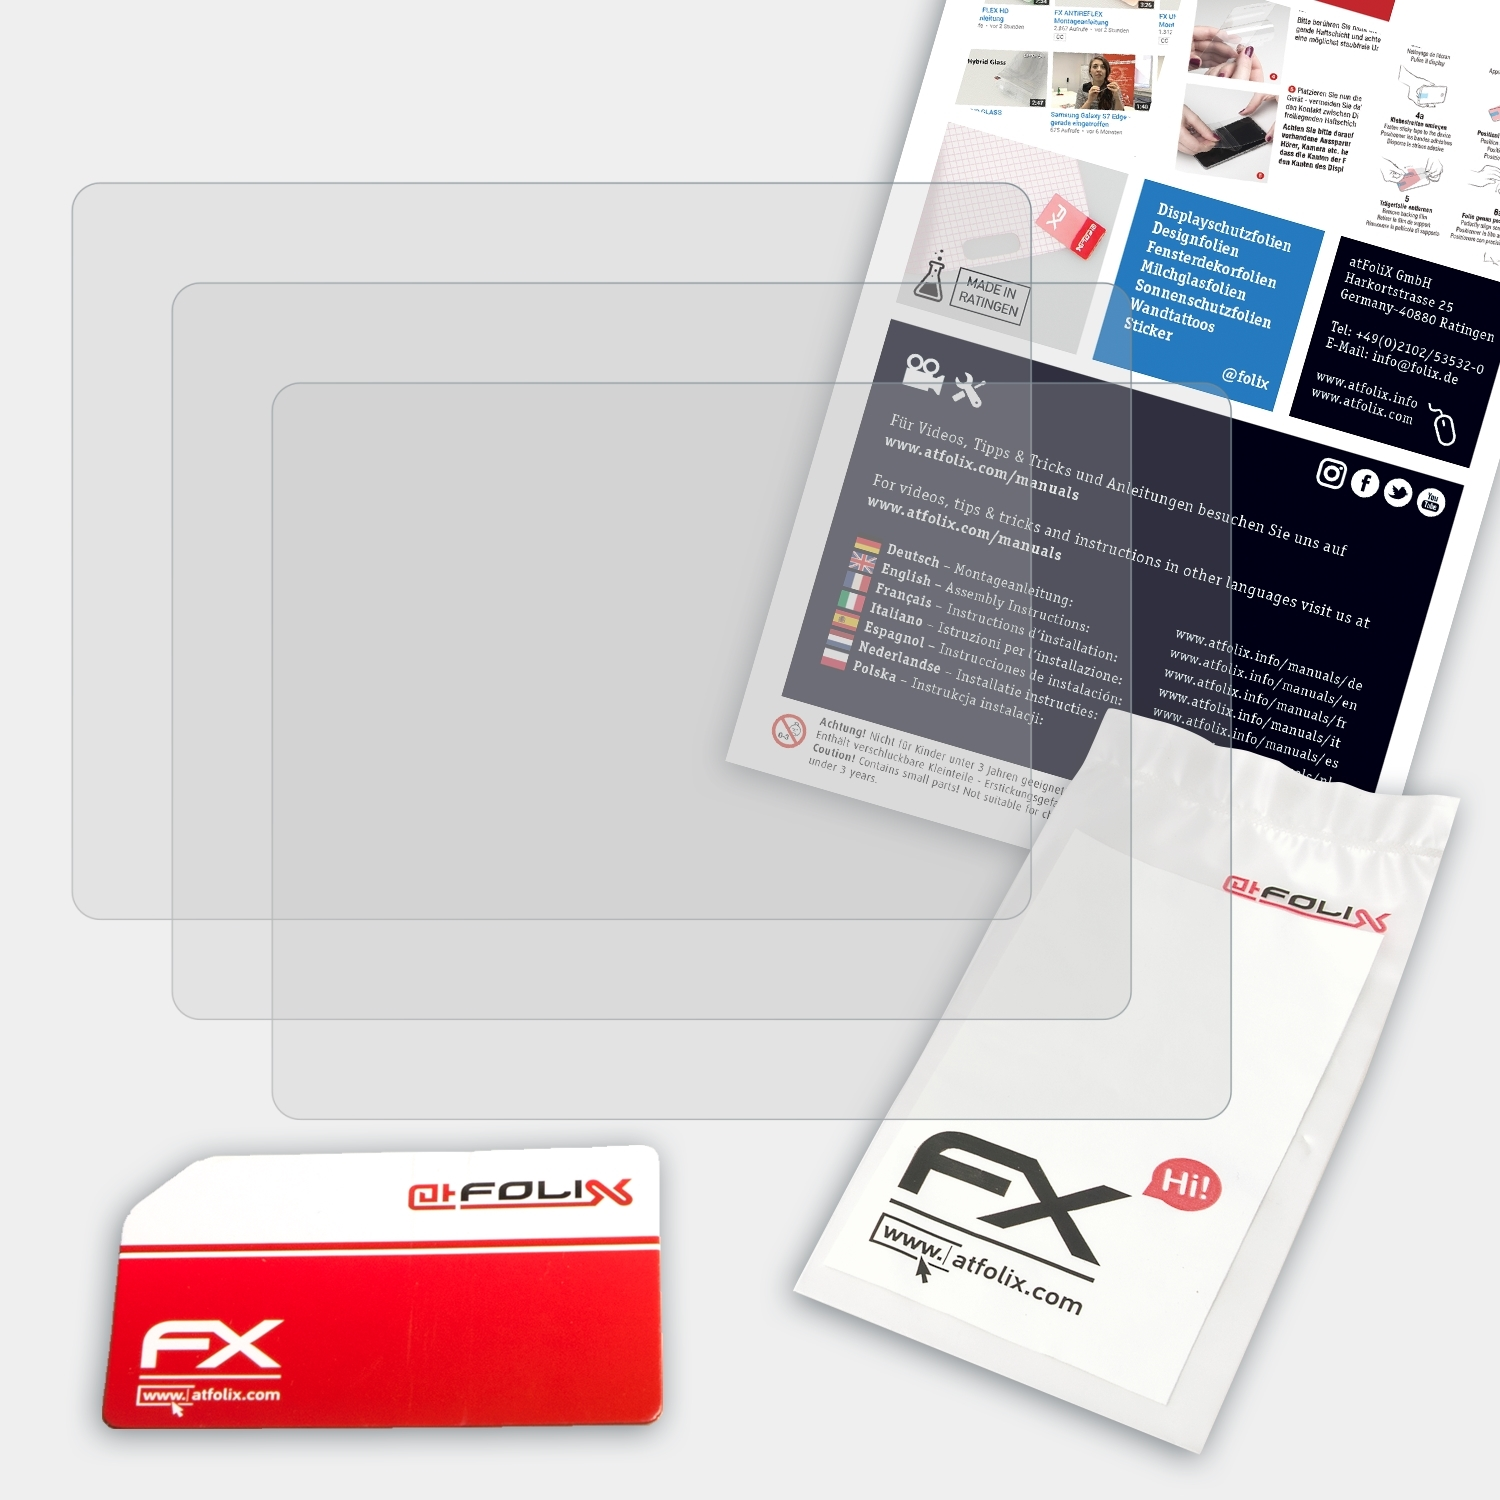 FX-Antireflex Displayschutz(für Pentax ATFOLIX K-r) 3x